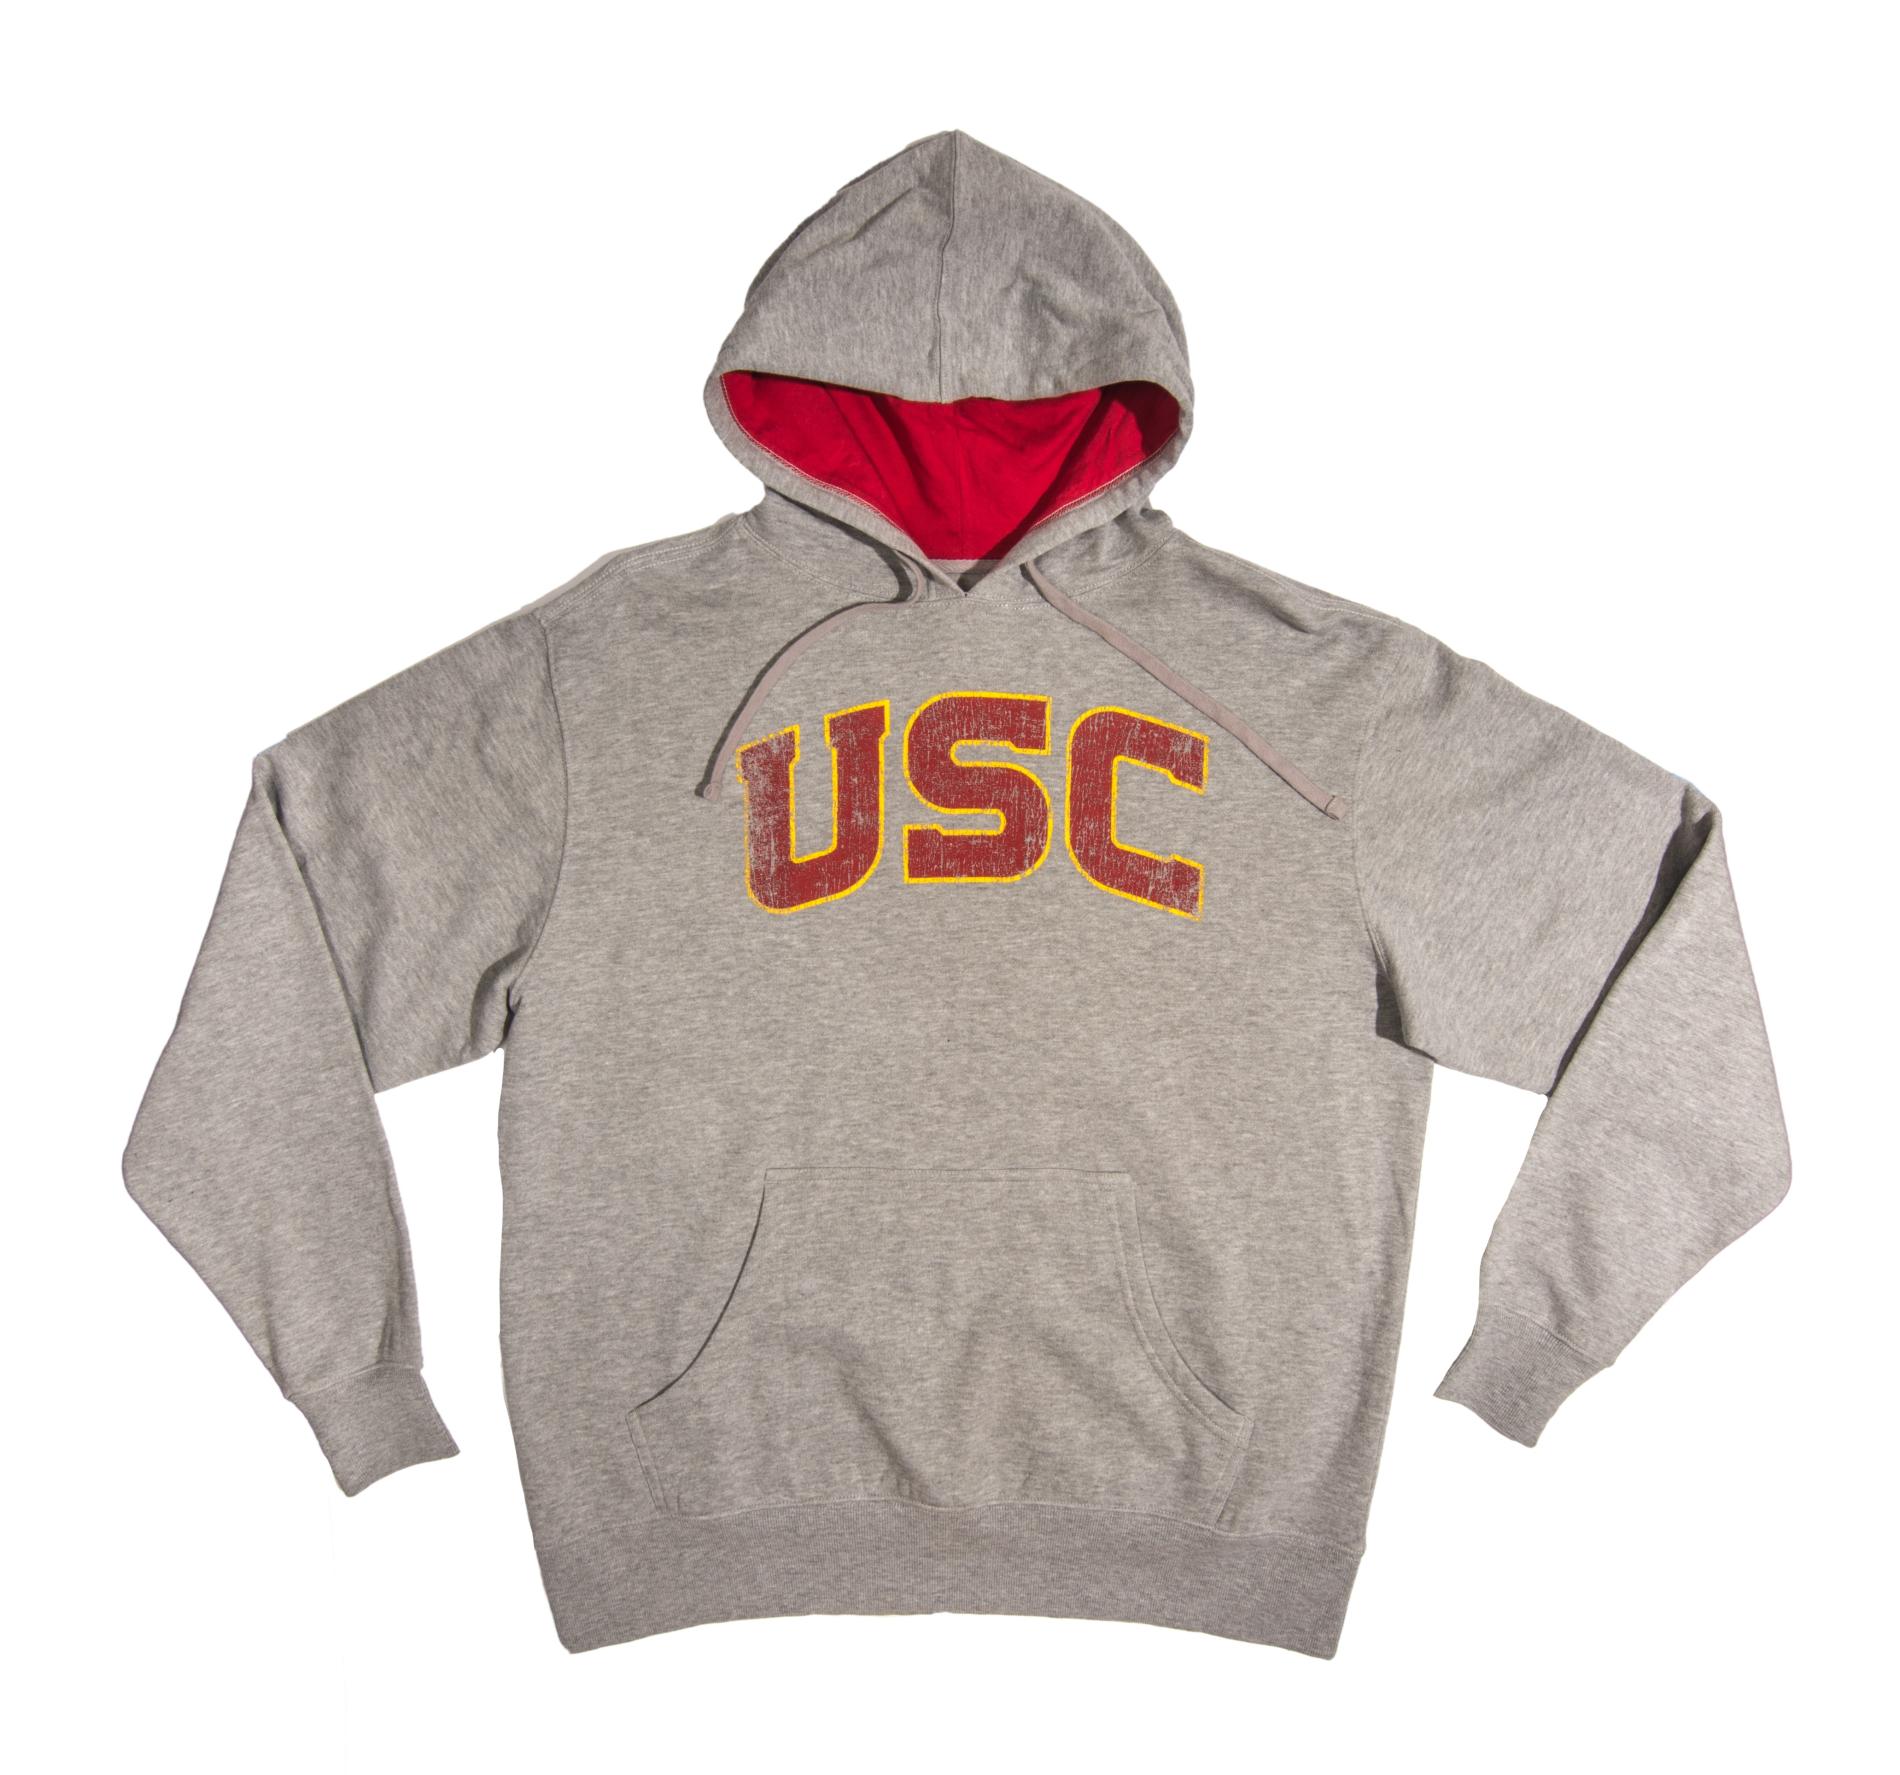 NCAA Men's Hooded Sweatshirt - USC Trojans